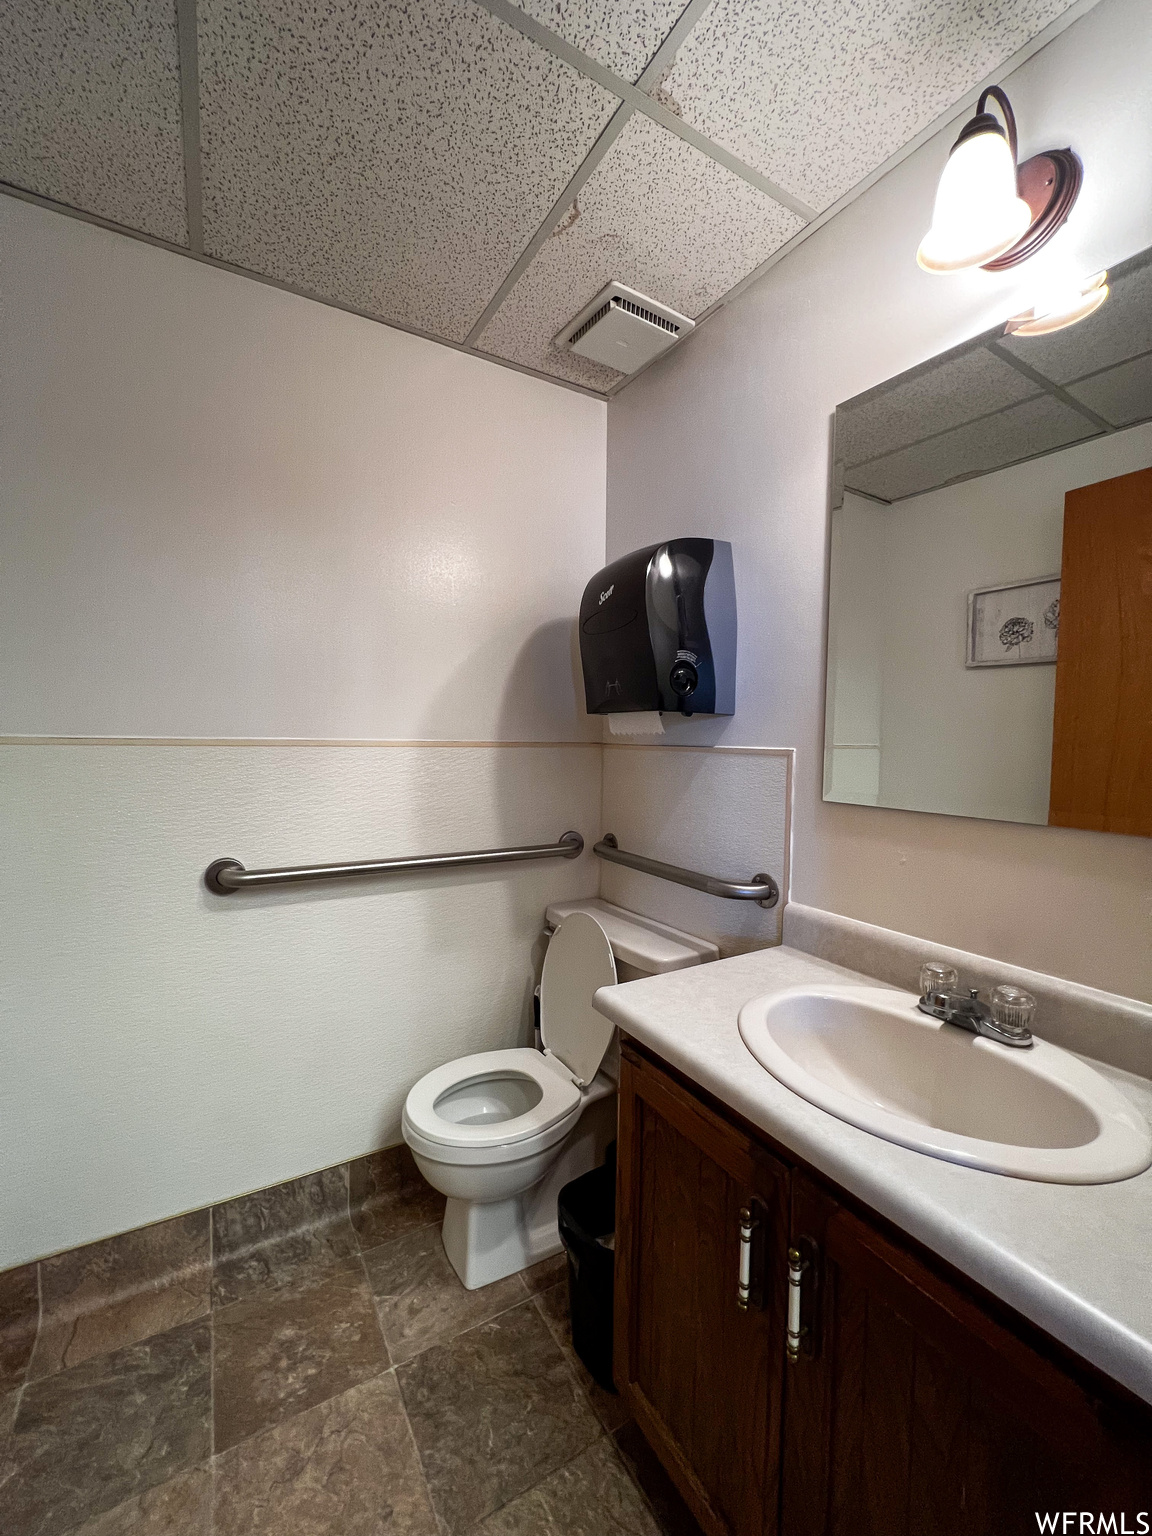 Bathroom featuring vanity, a drop ceiling, dark tile floors, and mirror